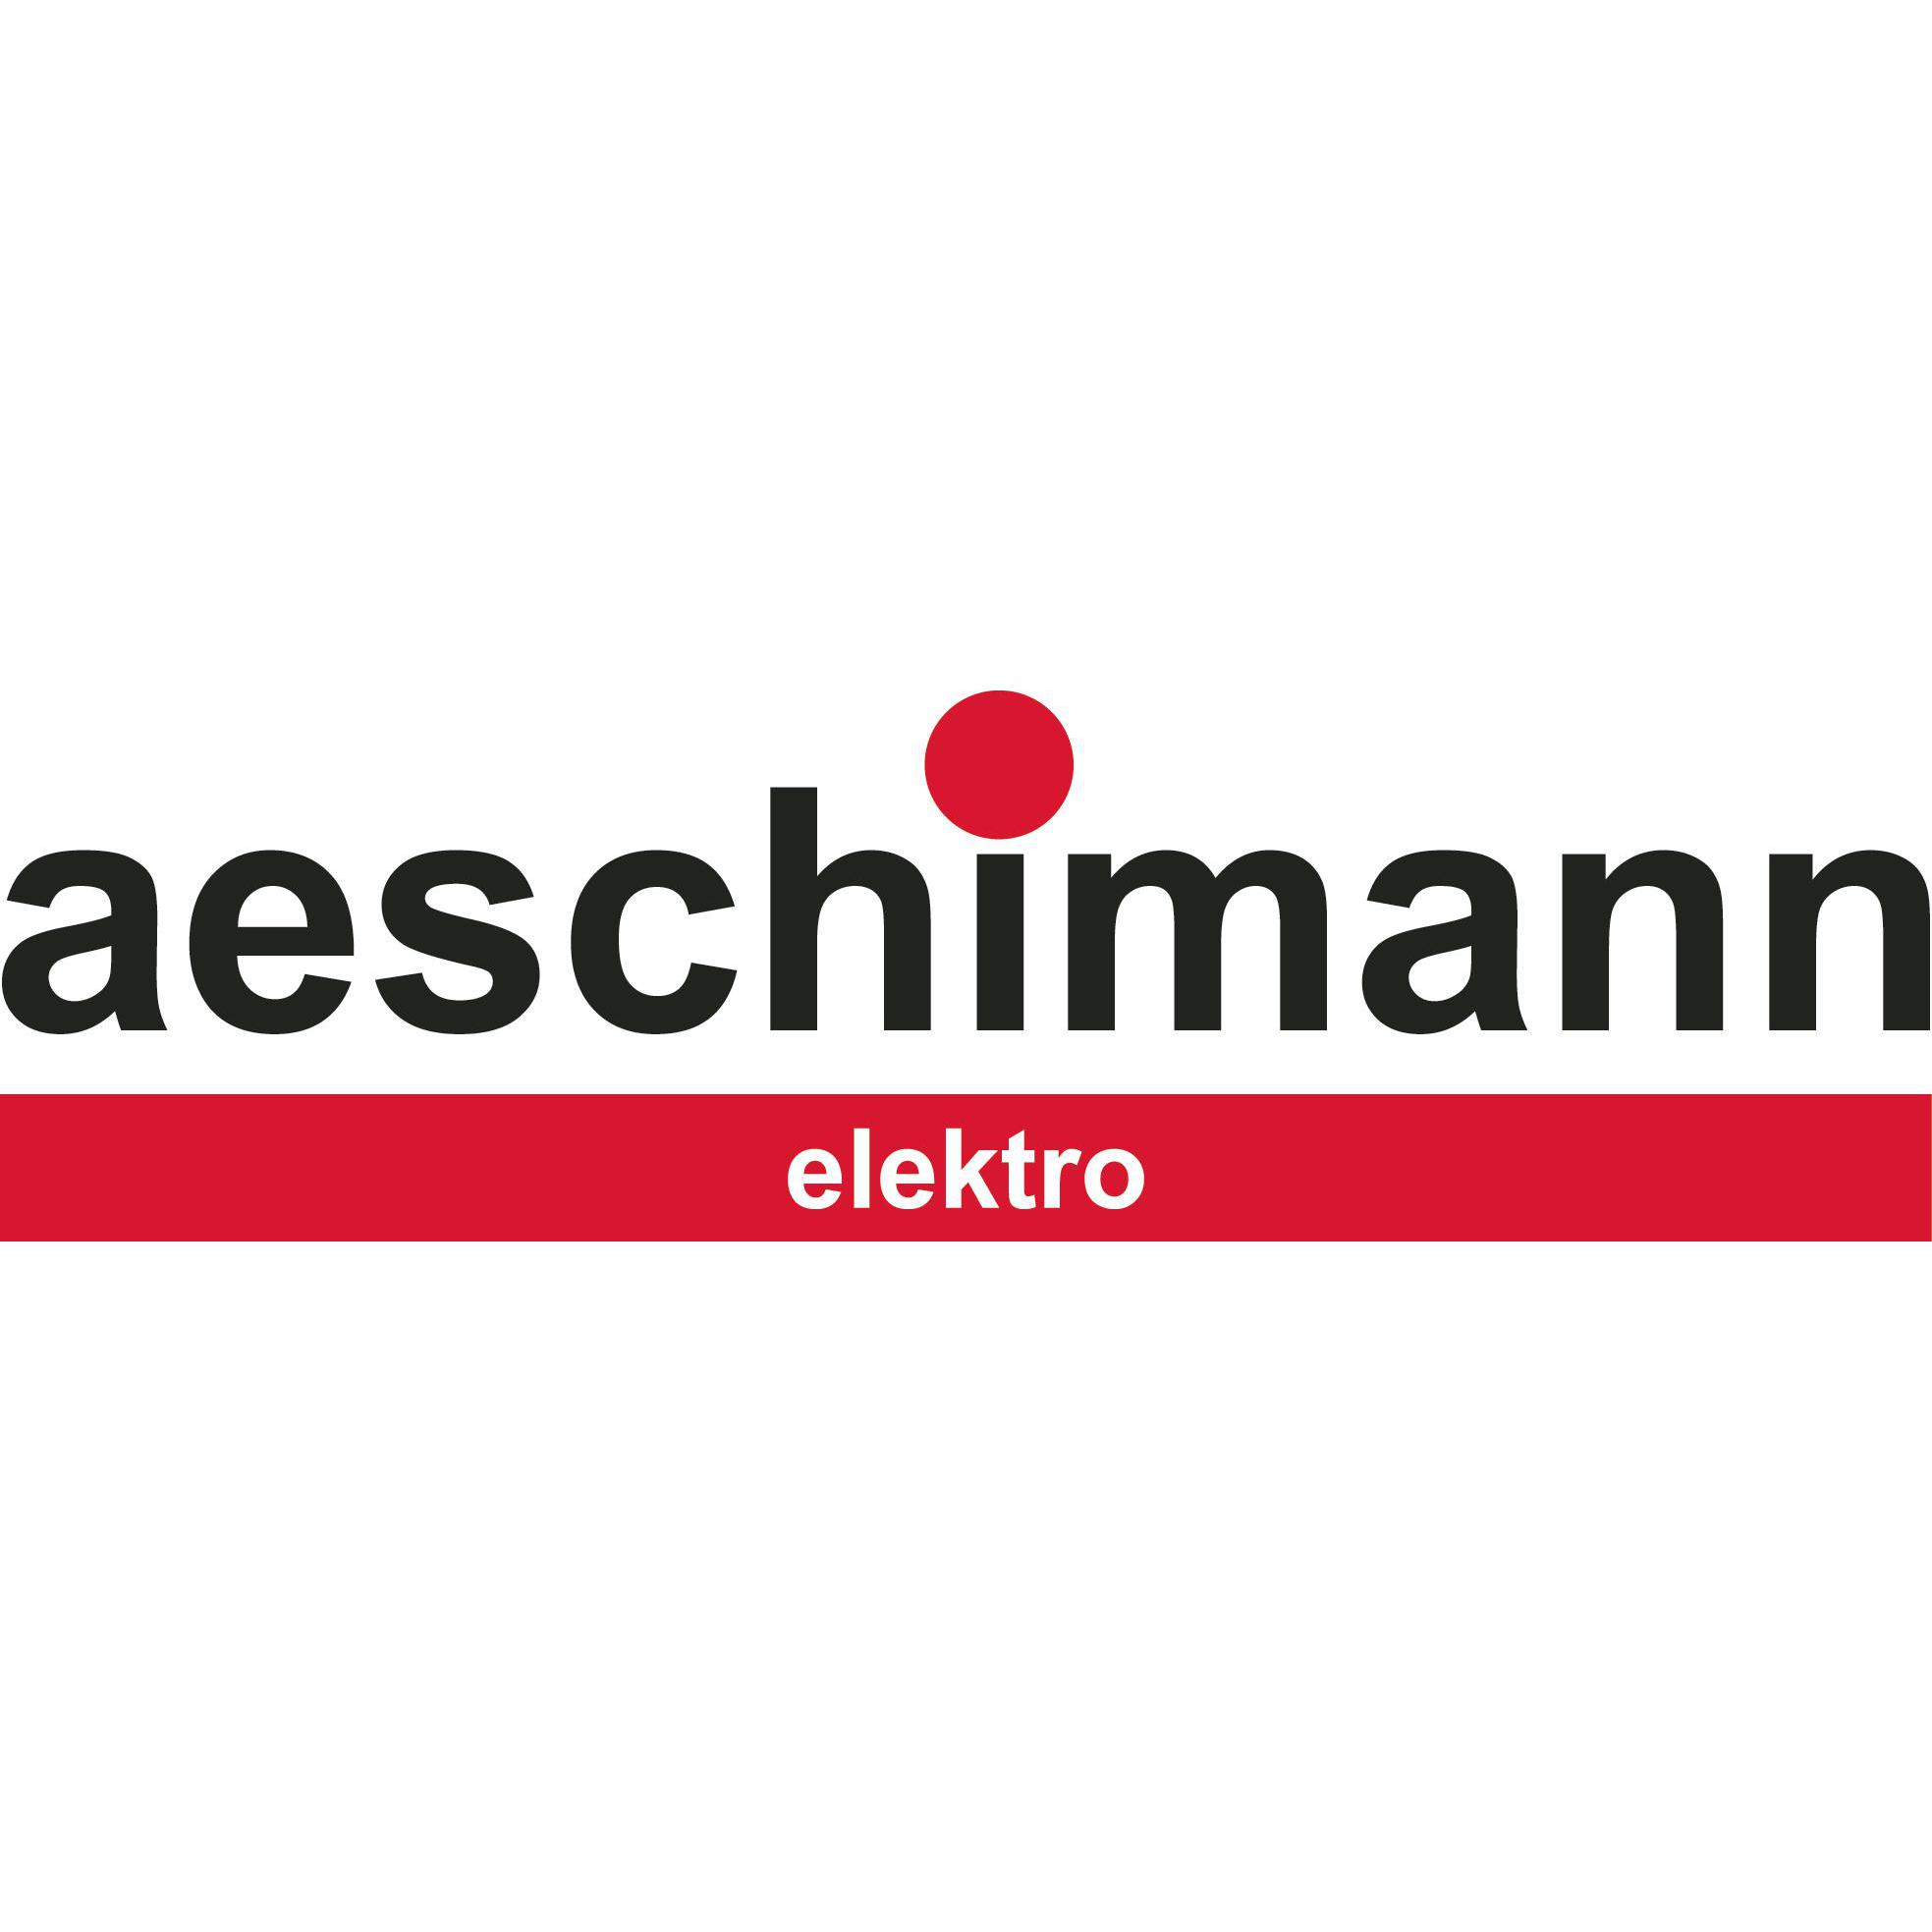 aeschimann elektro ag Logo